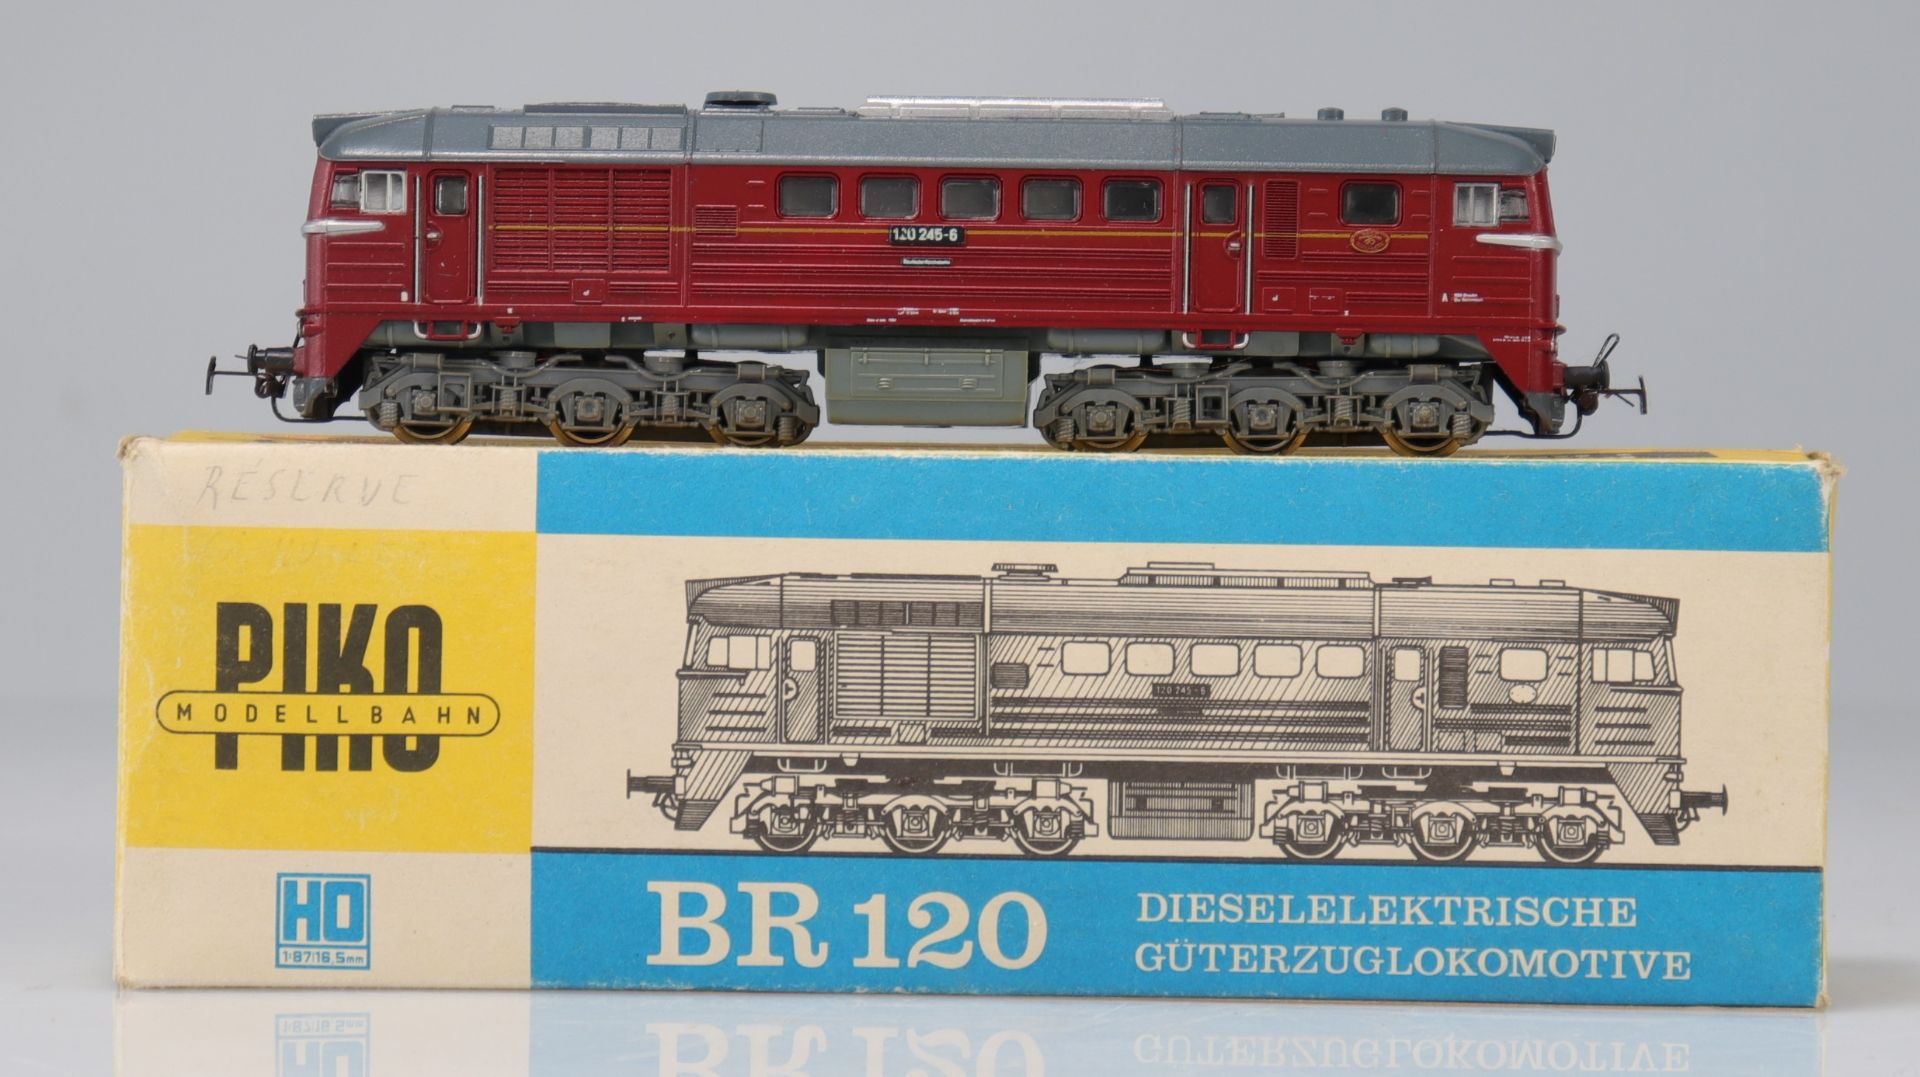 Piko locomotive / Reference: 190/21 / Type: BR120 Diesellokomotive